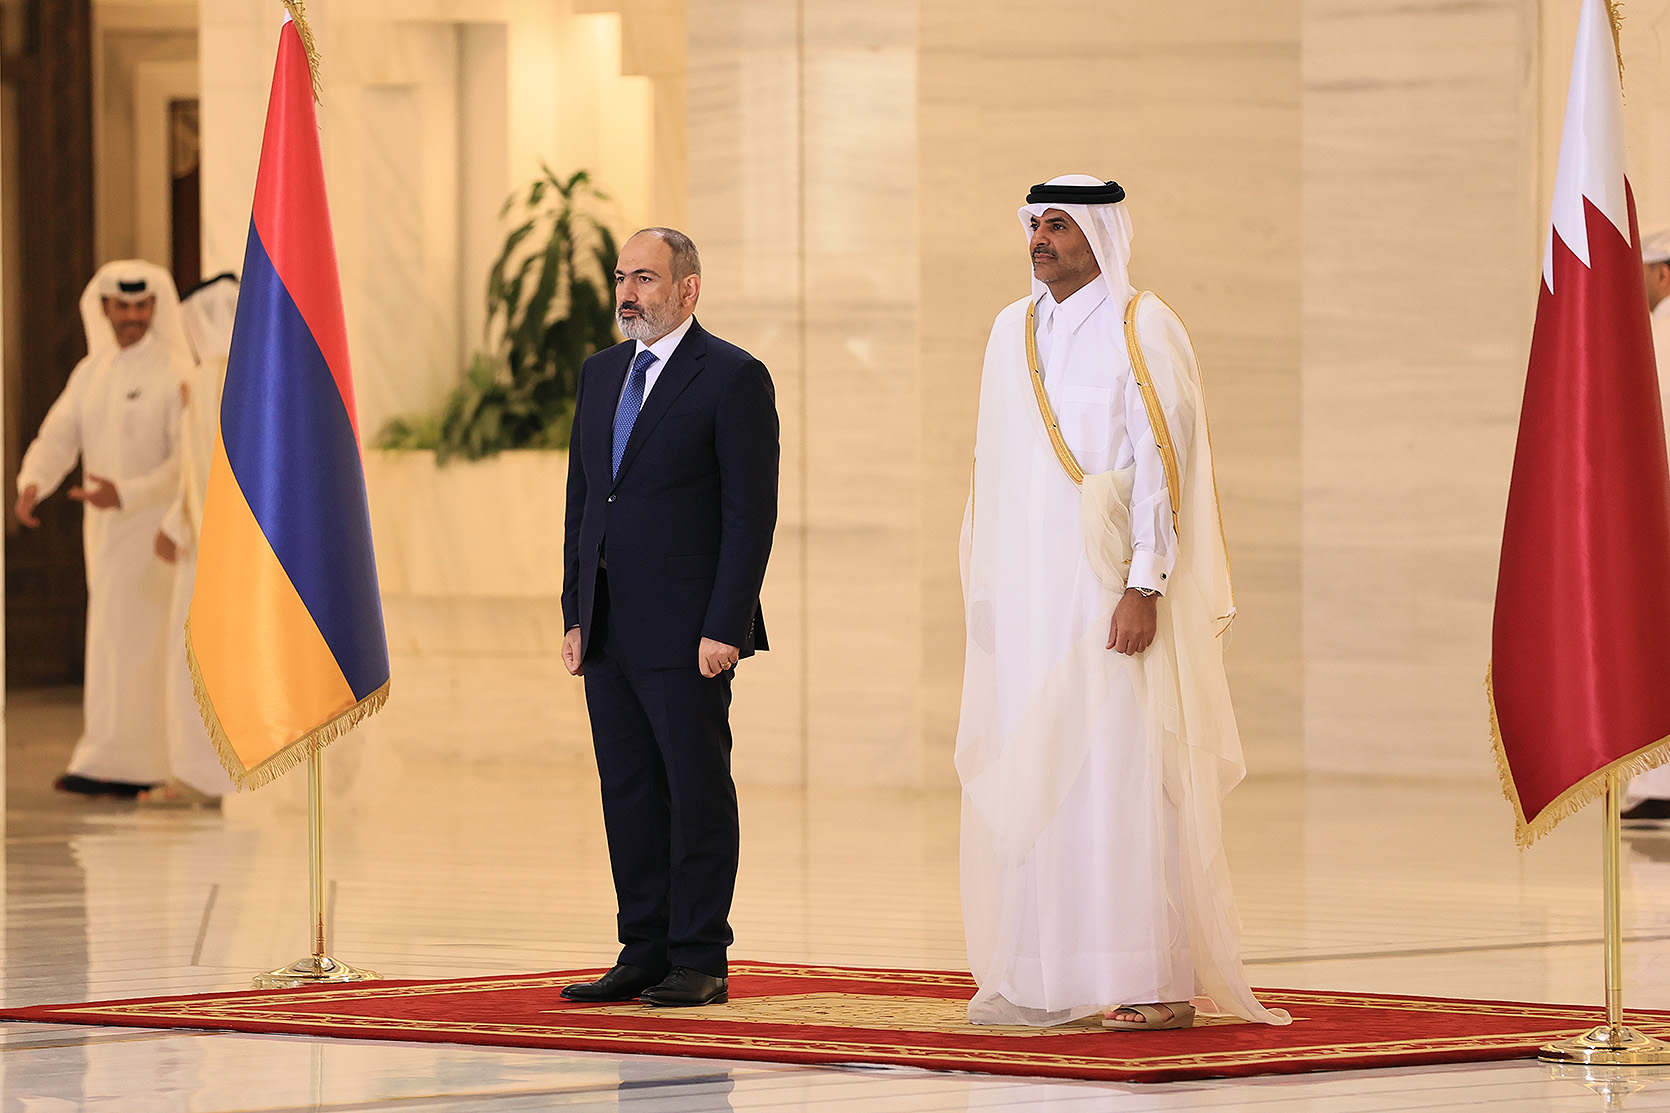 Հայաստանի և Կատարի վարչապետների հանդիպումը. ստորագրվել են մի շարք փաստաթղթեր